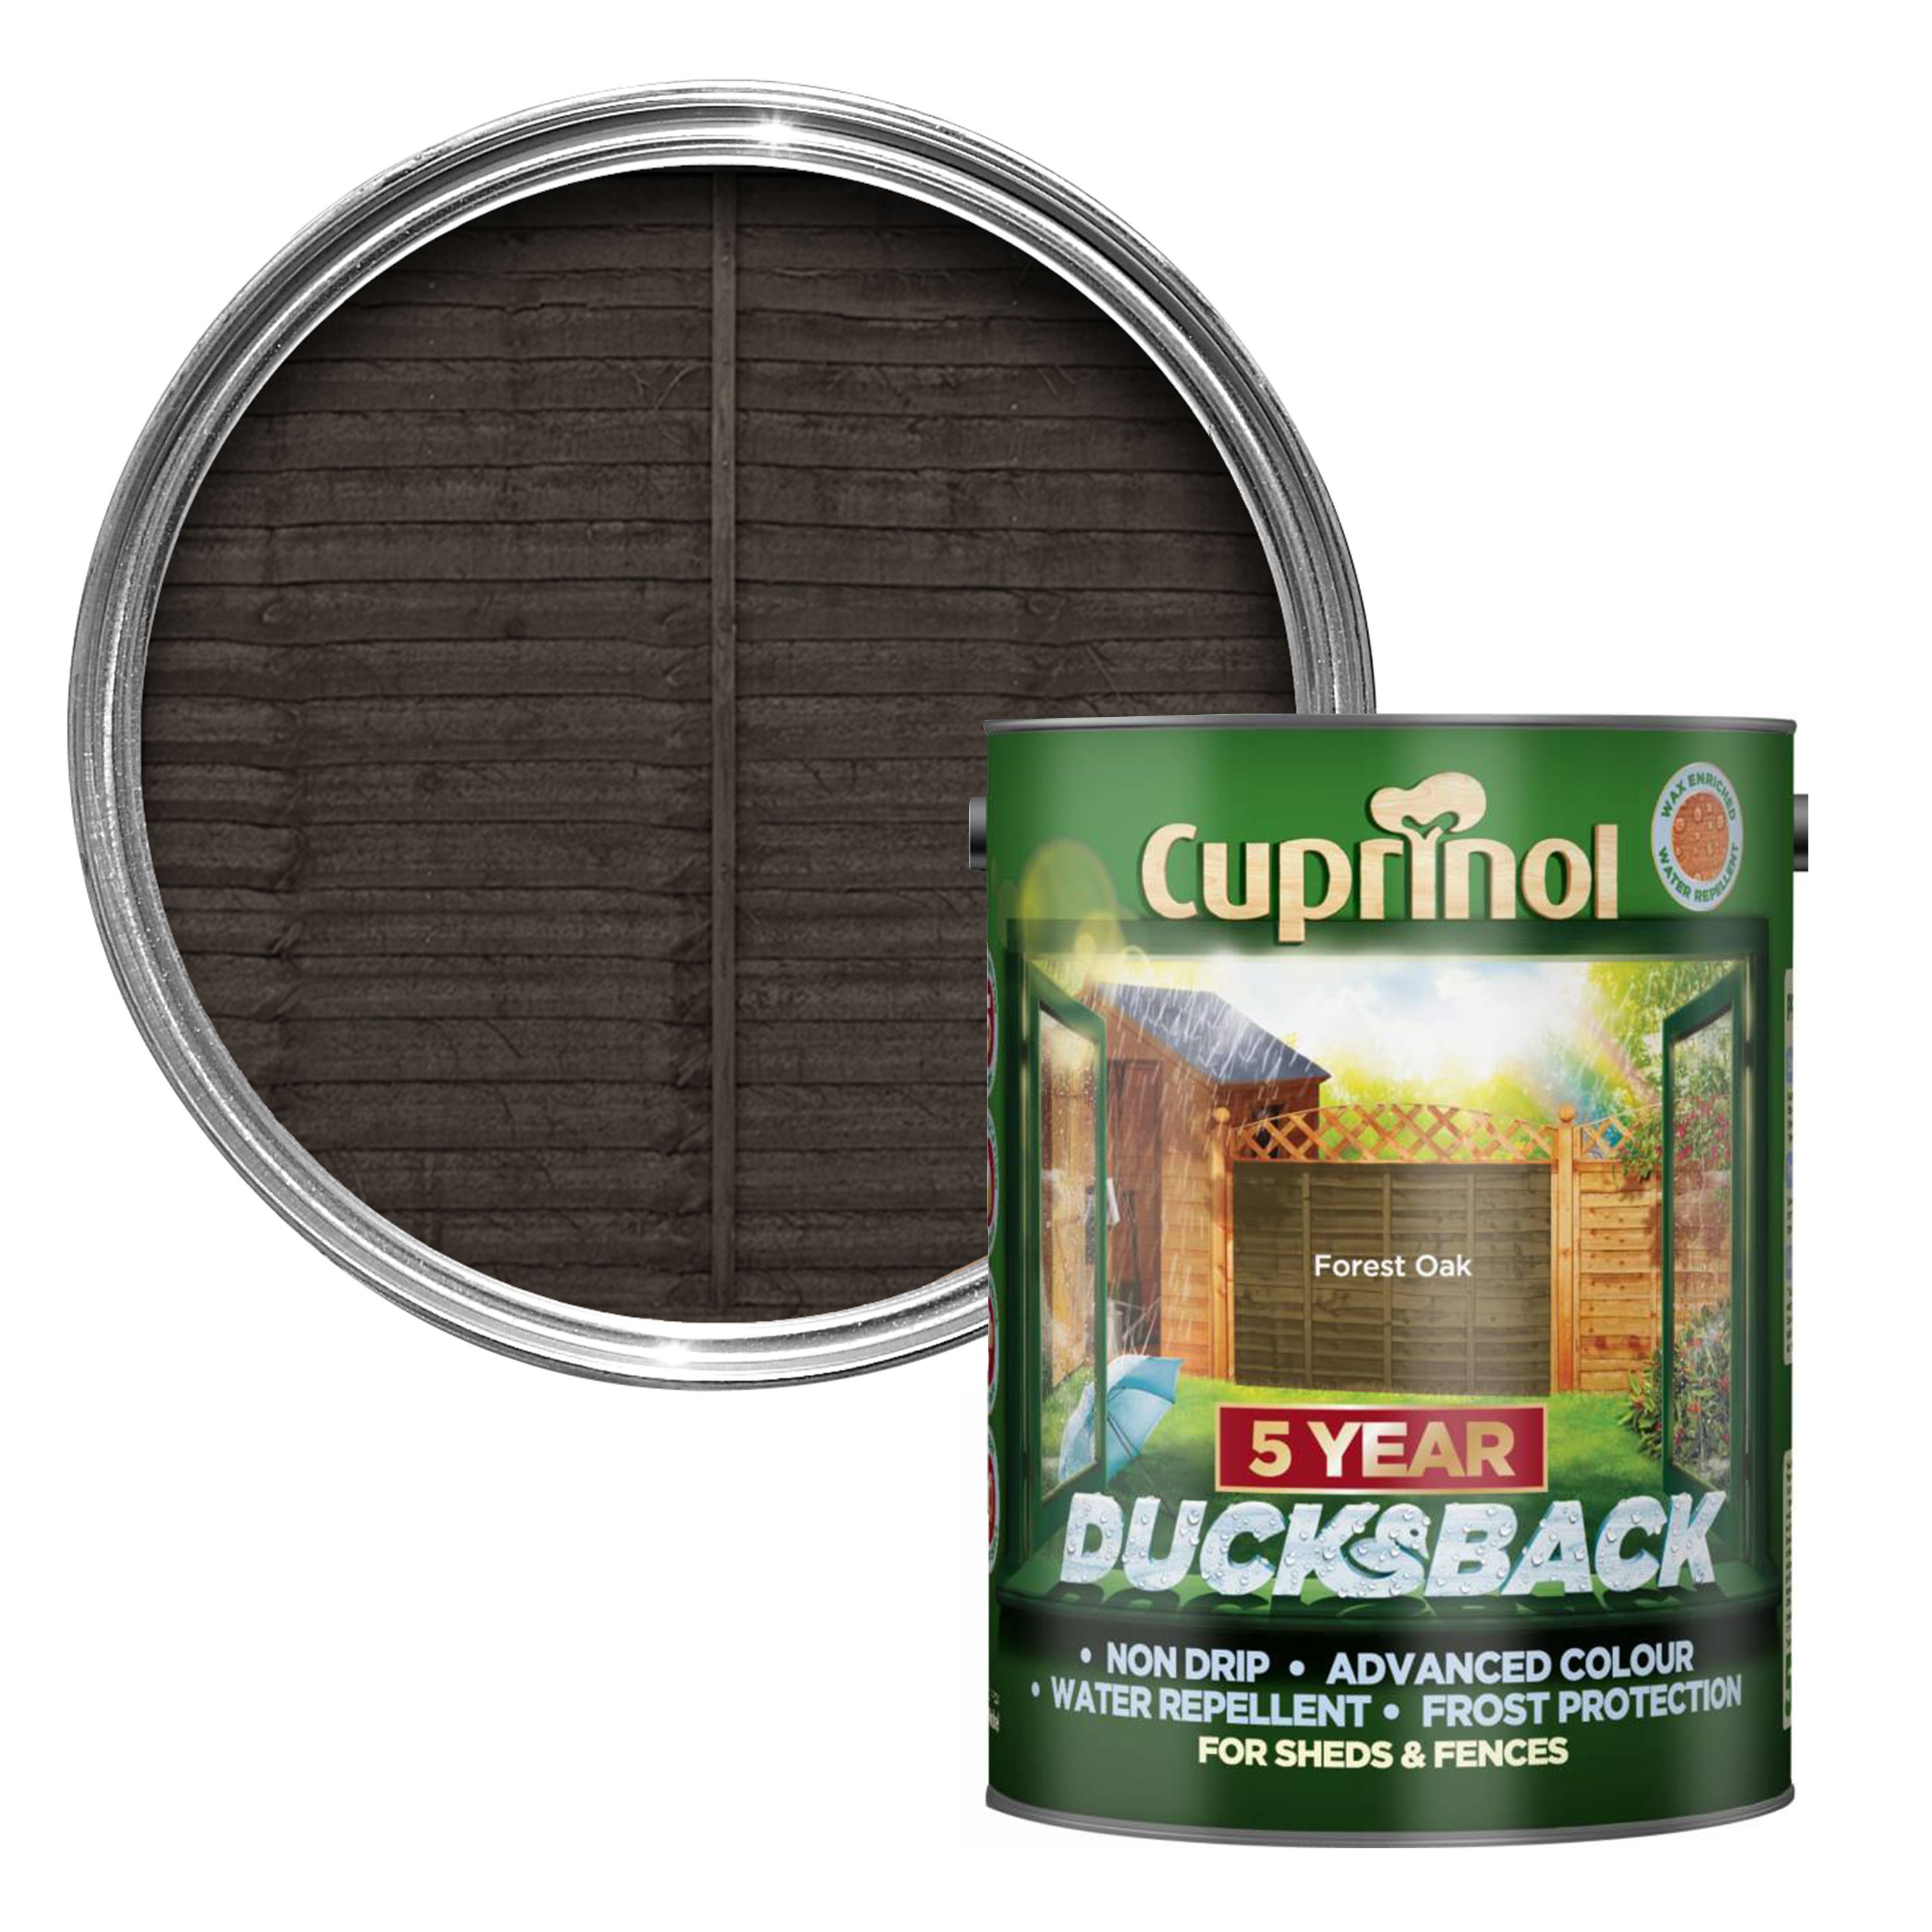 Cuprinol 5 Year Ducksback Forest oak Shed &amp; fence 